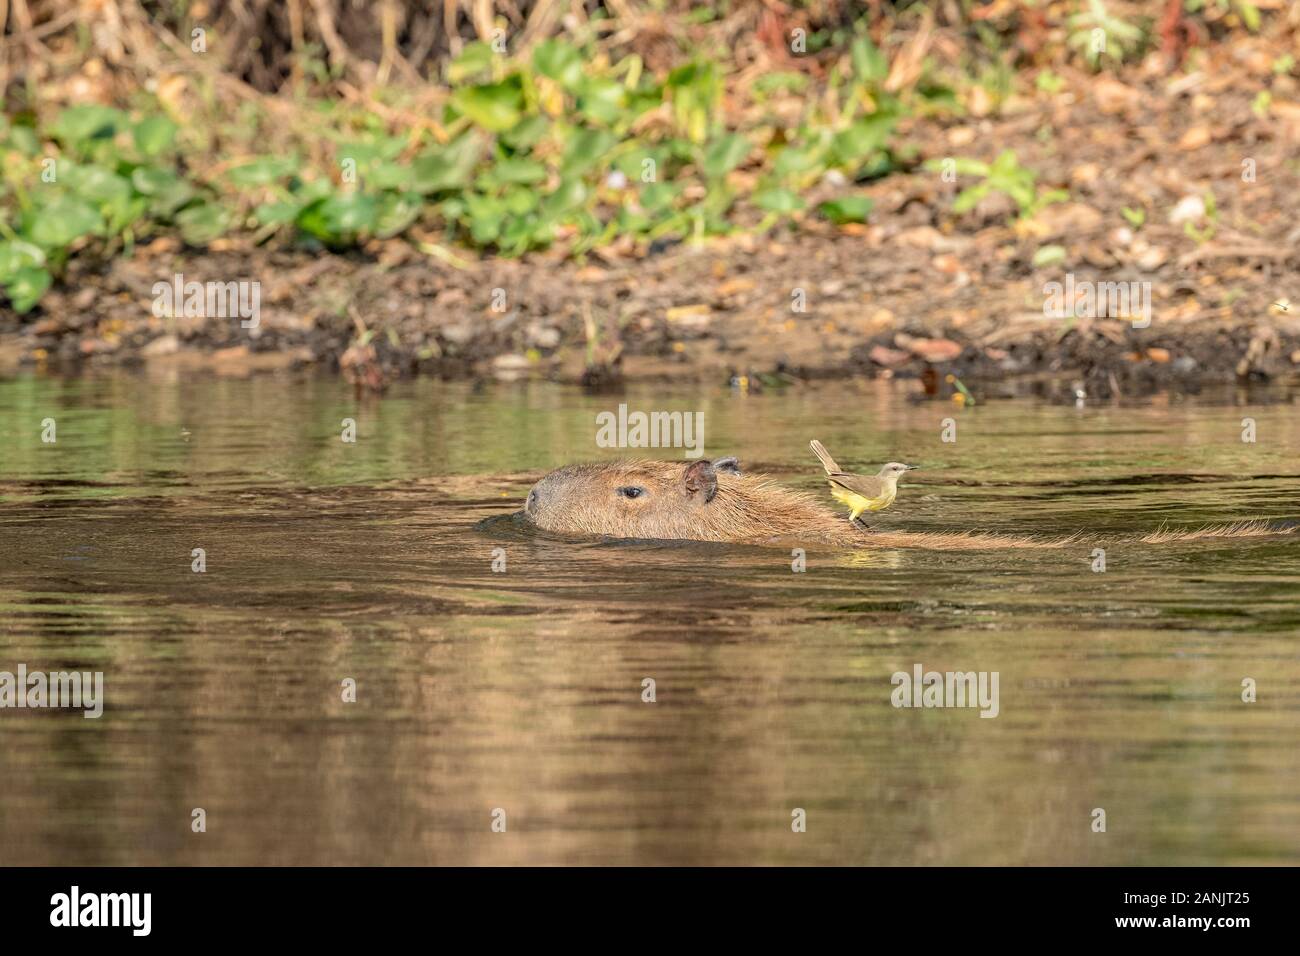 White-lored albilora Pristimantis), l'attelage d'une balade à dos d'une femelle capybara pour traverser la rivière (Hydrochoerus hydrochaeris) est Banque D'Images